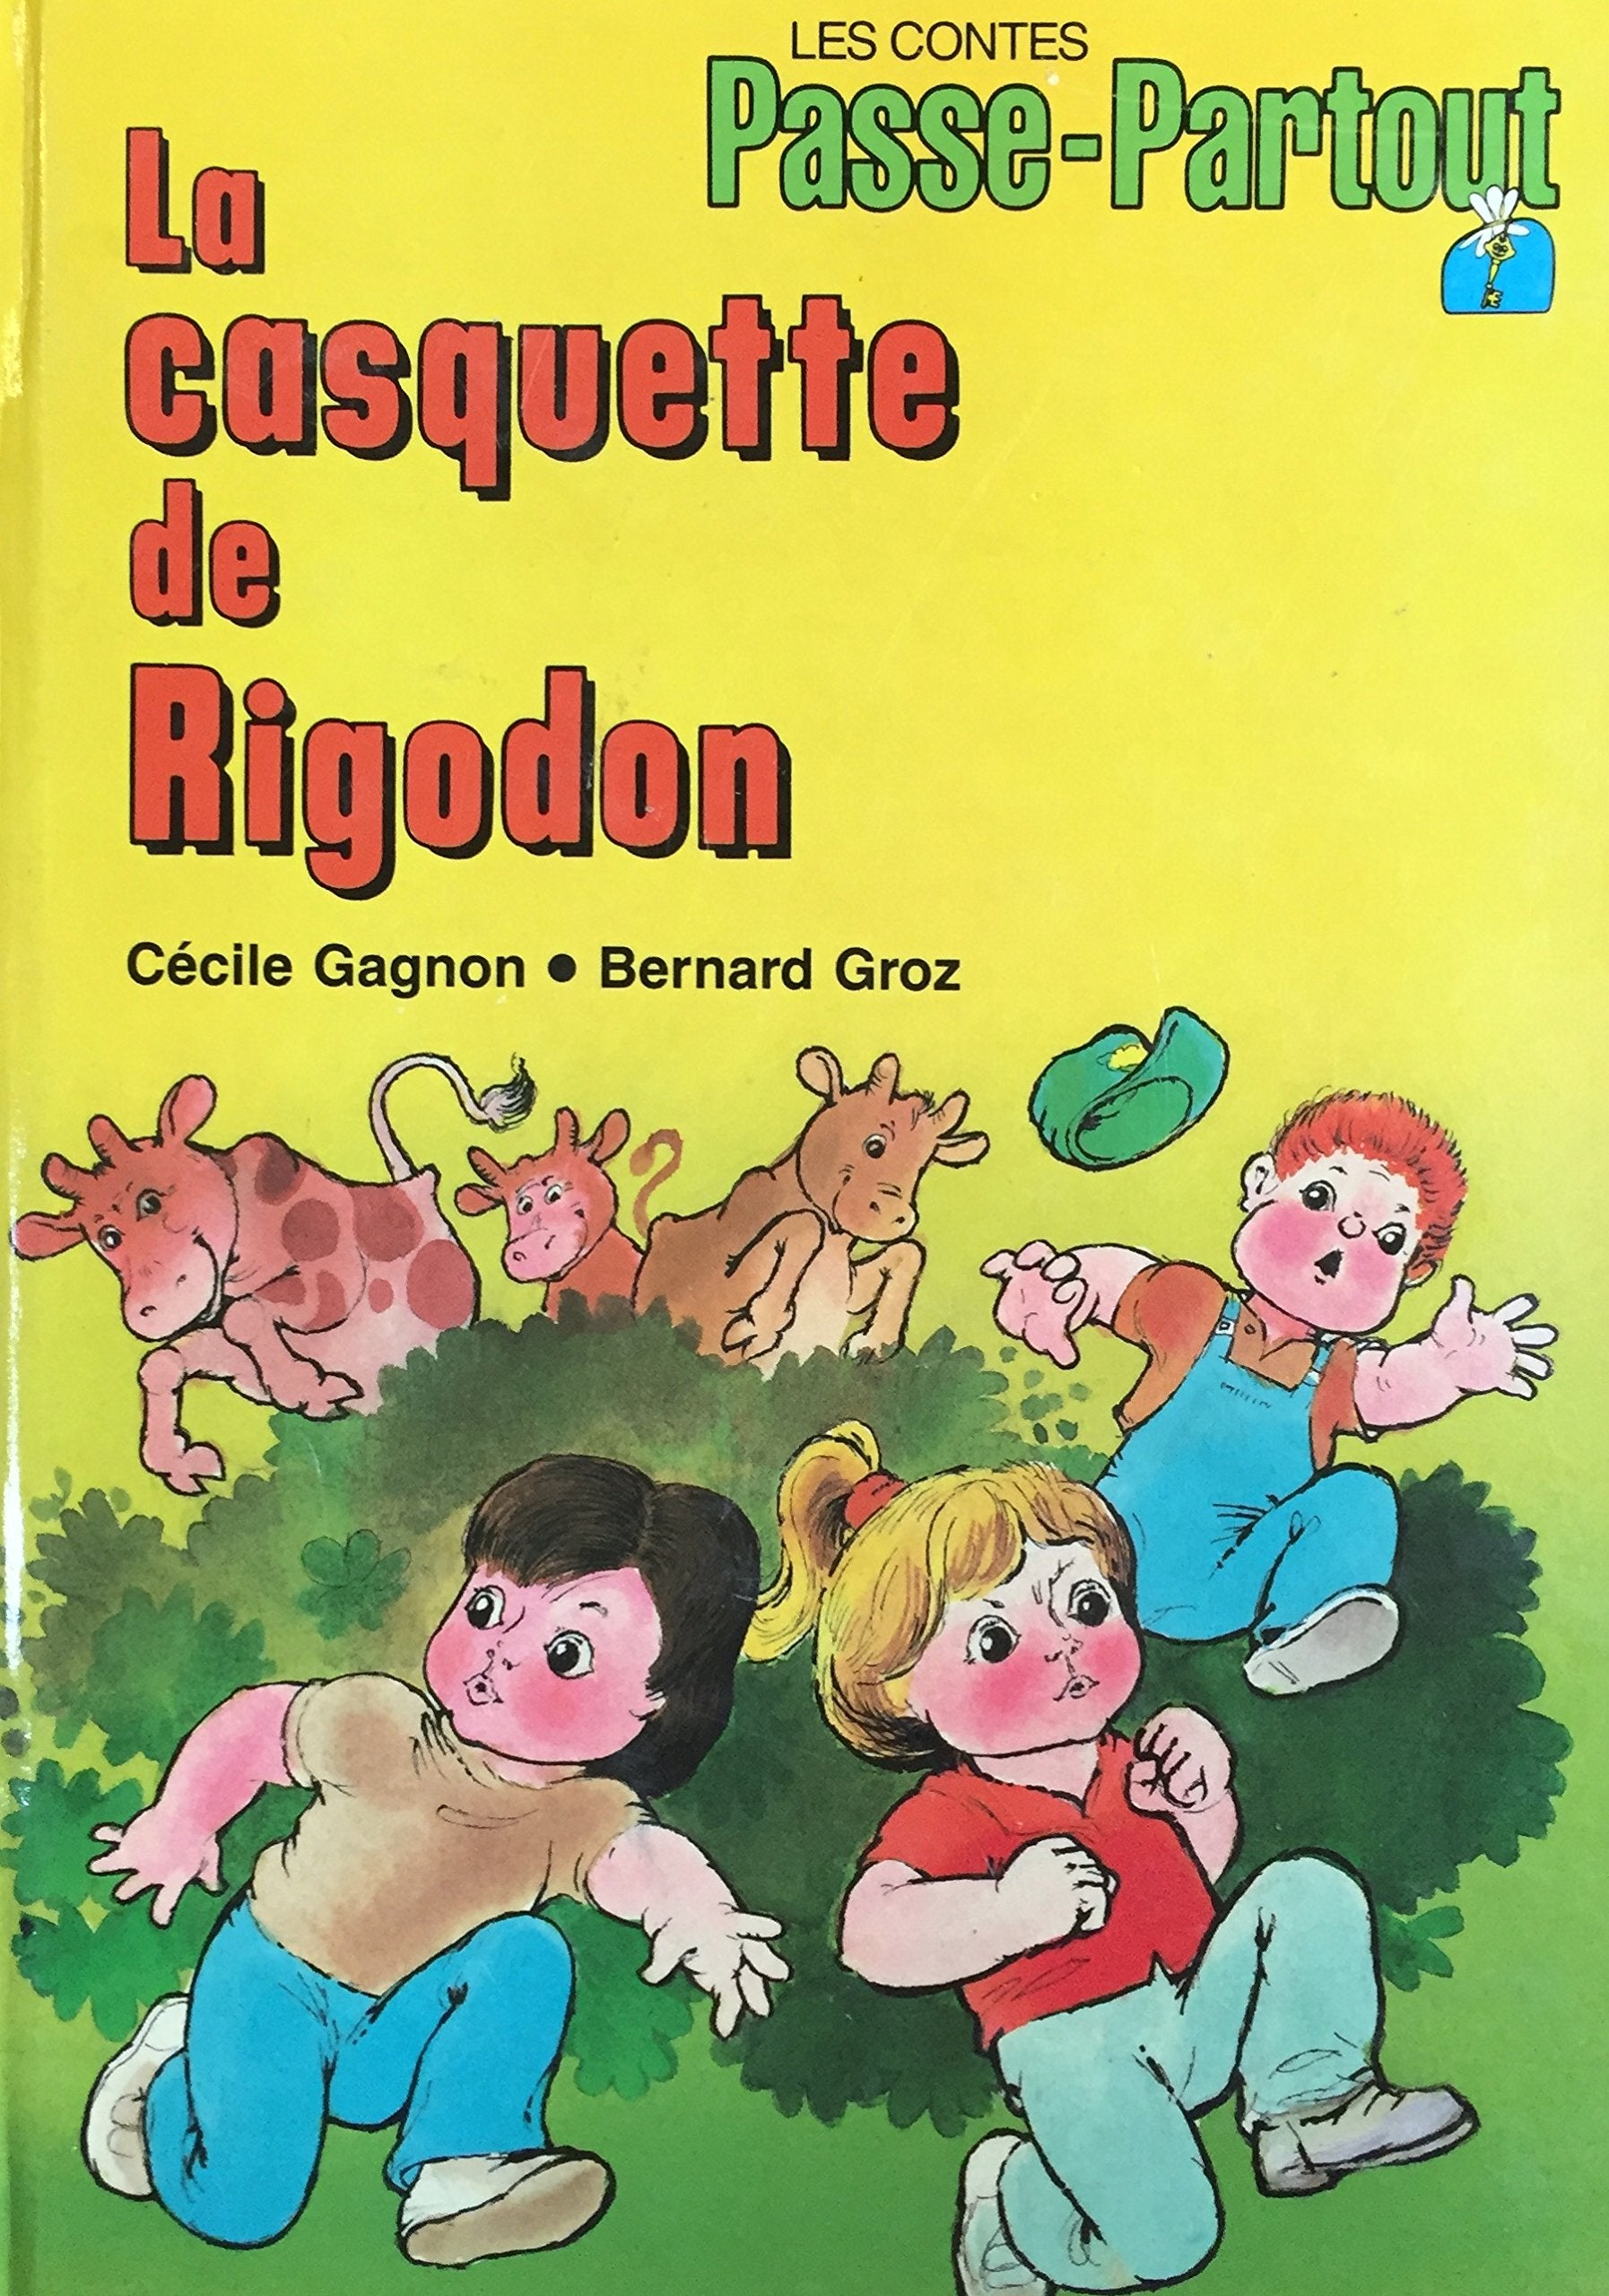 Les contes Passe-Partout : La casquette de Rigodon - Cécile Gagnon